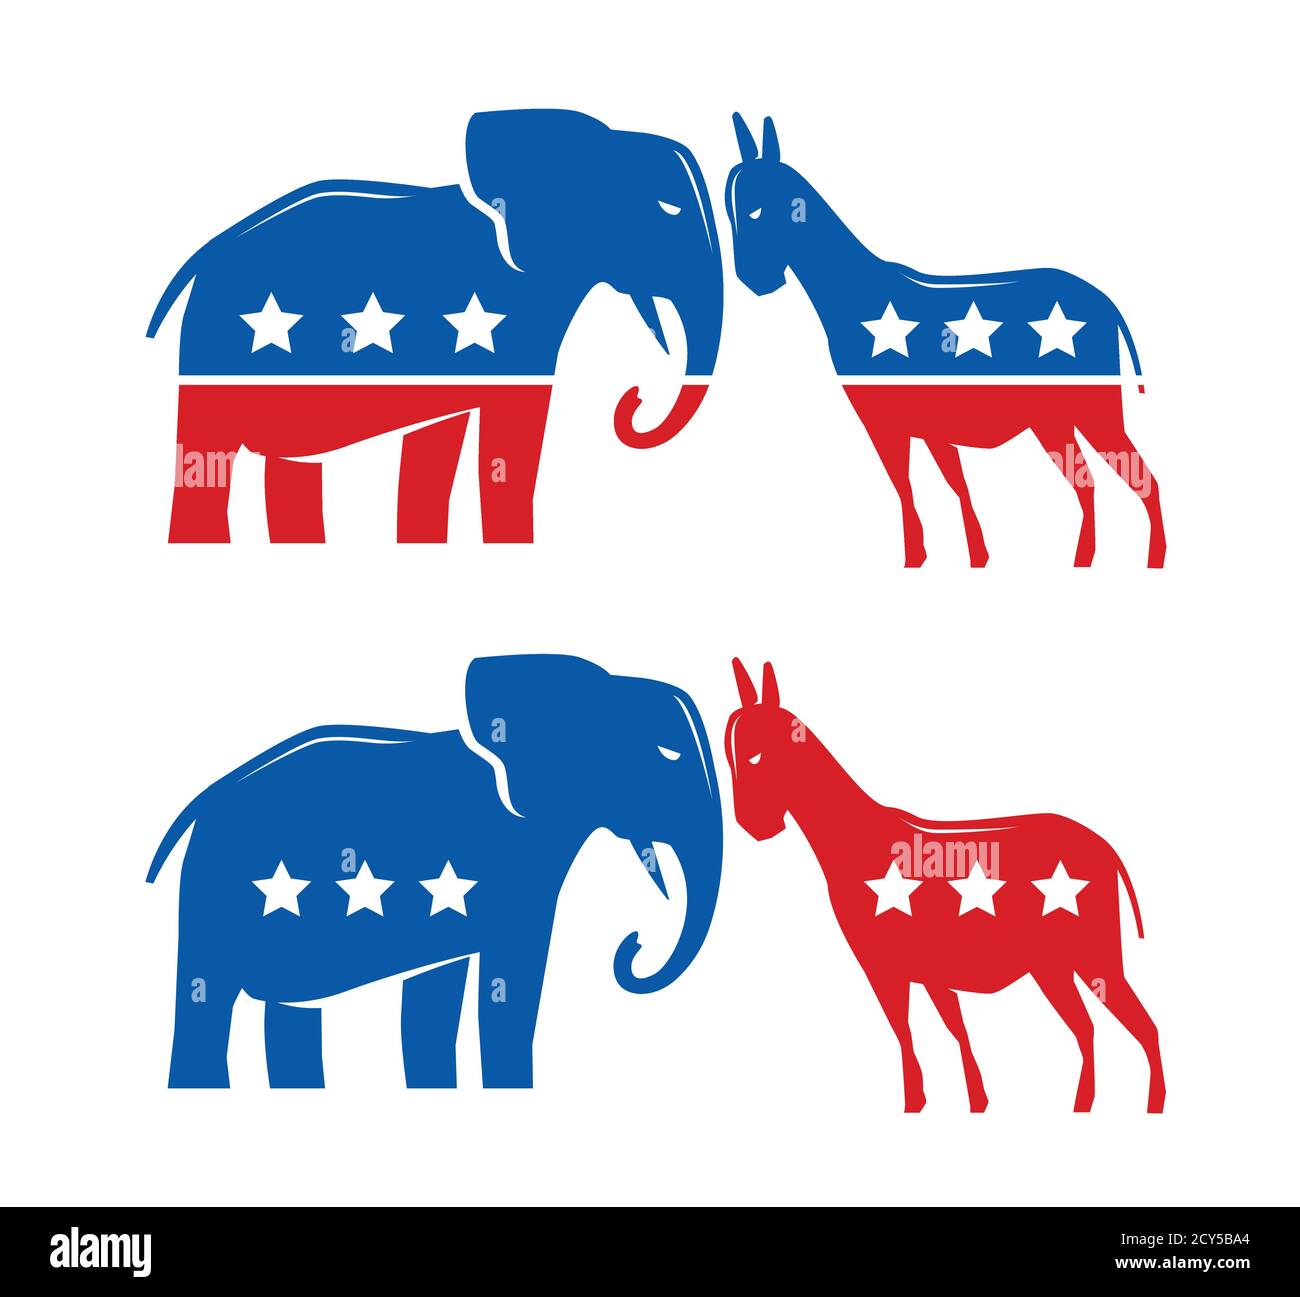 Demokratische und republikanische politische Symbole. Wahl, Abstimmung, politische Debatte Stock Vektor